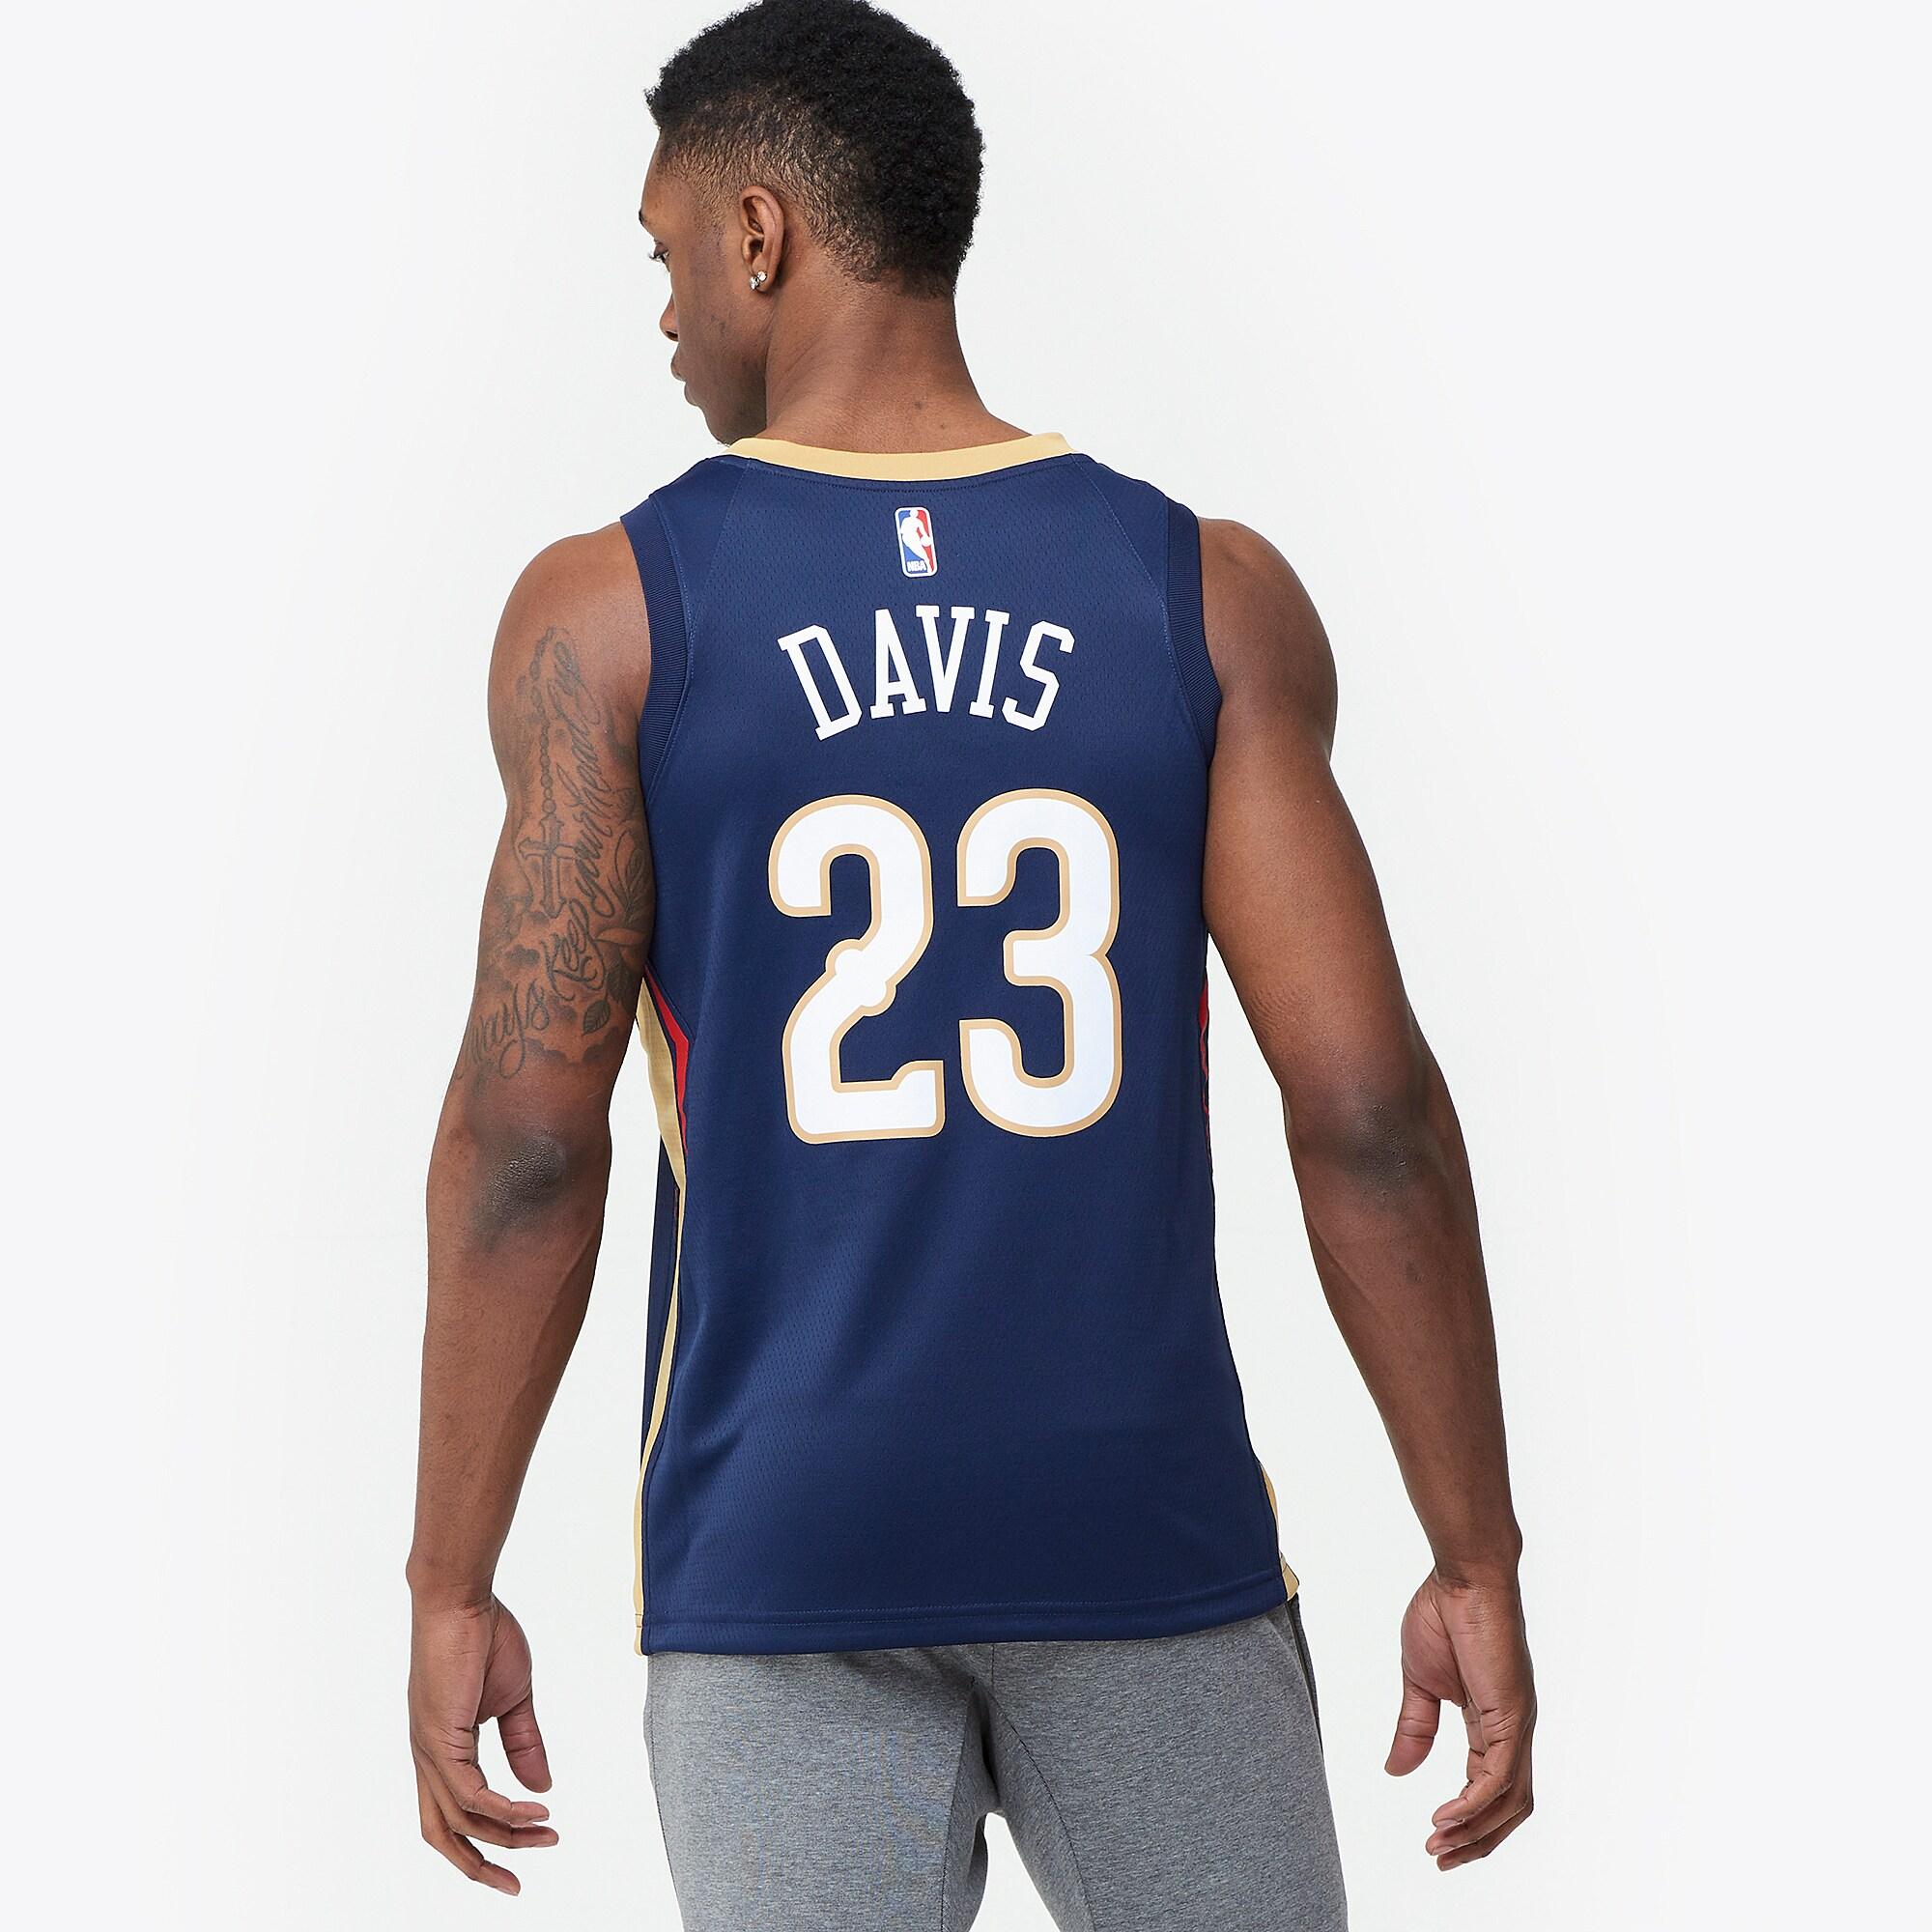 Nike Anthony Davis Nba Swingman Jersey in Blue for Men - Lyst